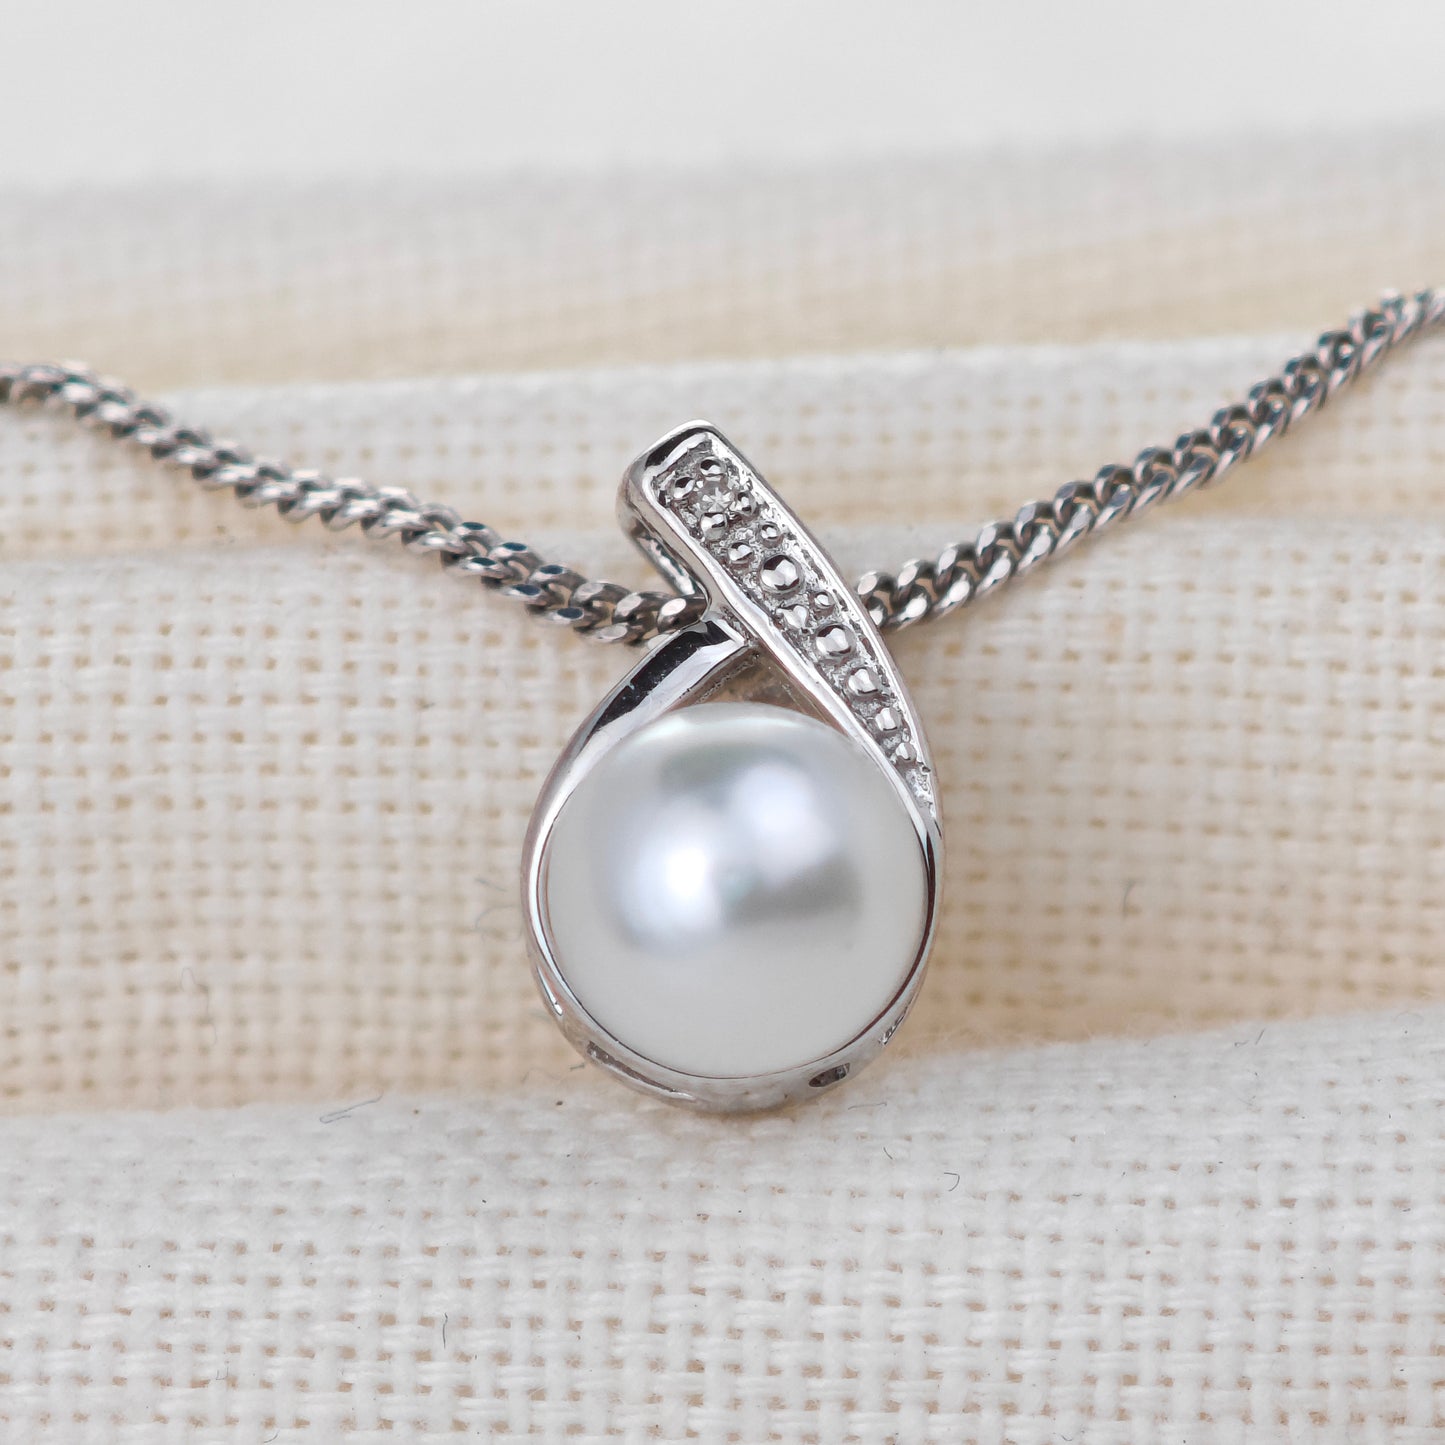 Silver Diamond Necklace Pearl 18'' Chain